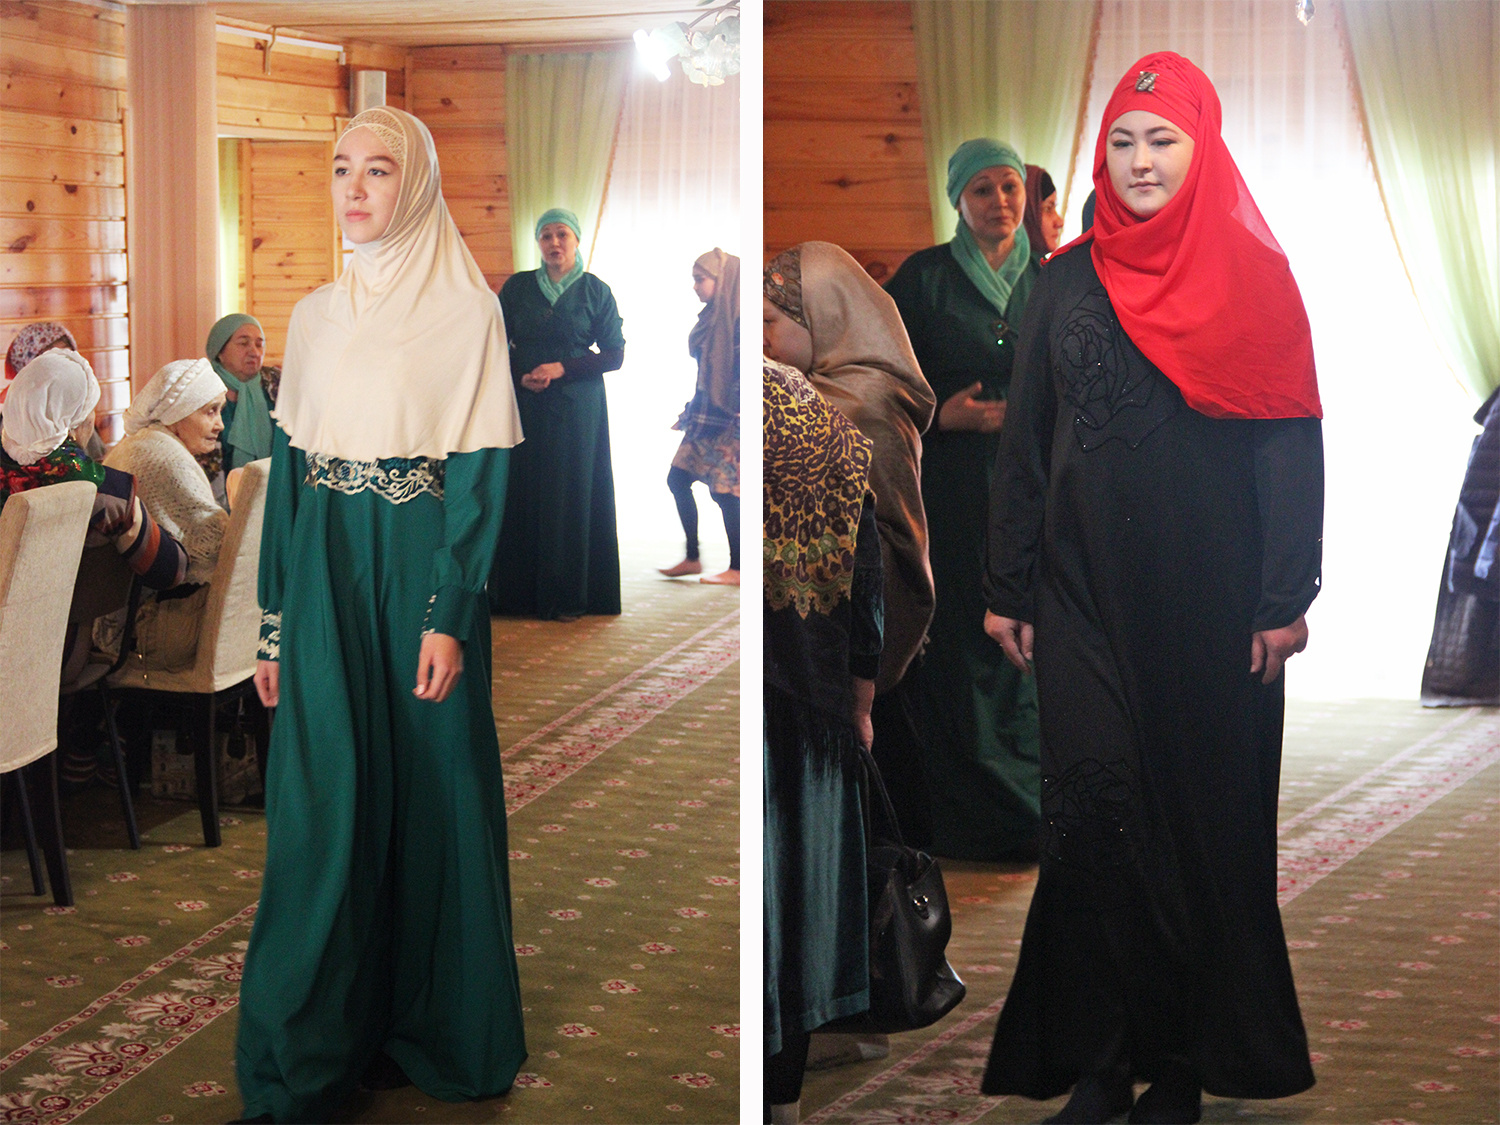 Участницы дефиле прошлись по мечети в красивой одежде для будней и праздников